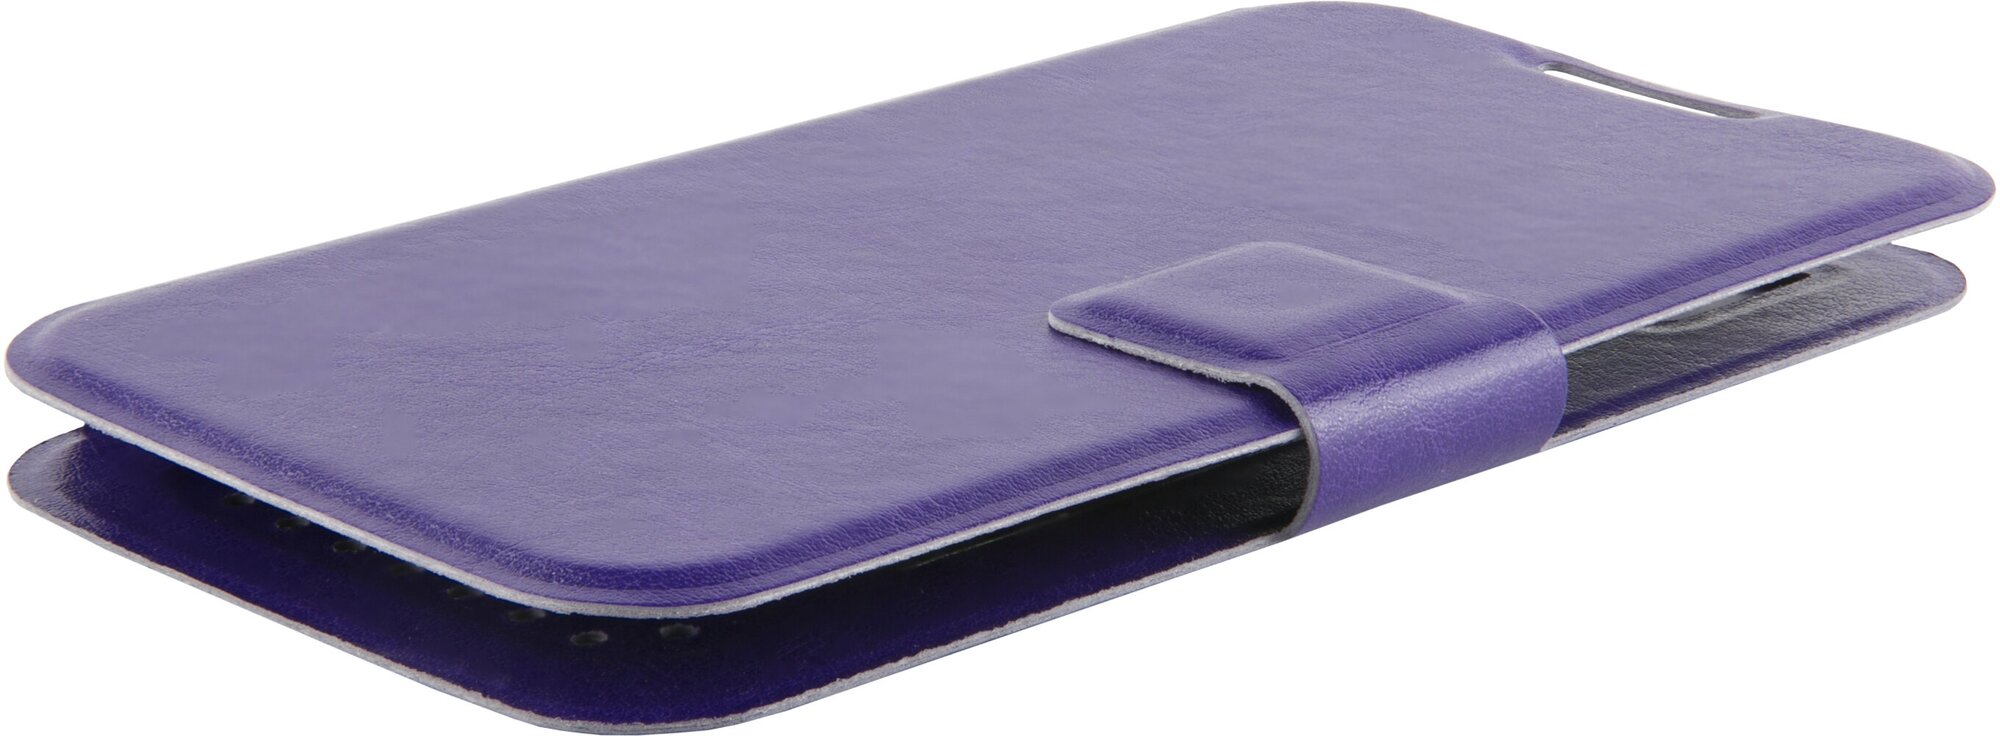 Защитный чехол для смартфона 4,2-5 дюйма универсальный/Case/Накладка для смартфона/Чехол - книжка на телефон с магнитом, фиолетовая